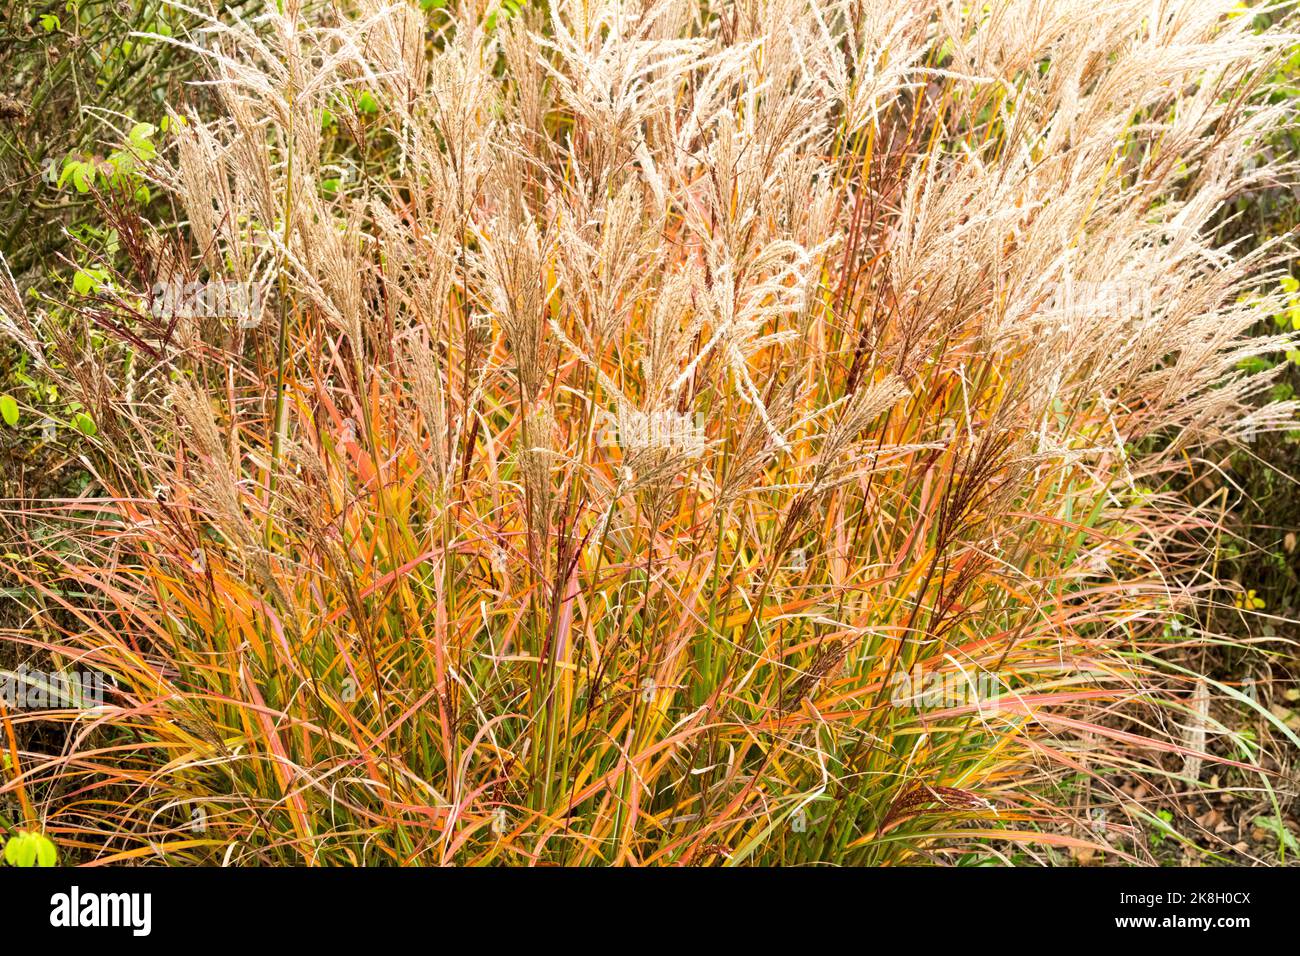 Zwergjungfrauengras, Herbst, 'Ferner Osten', Miscanthus, Mädchengras, Miscanthus sinensis Herbstfärbung Stockfoto